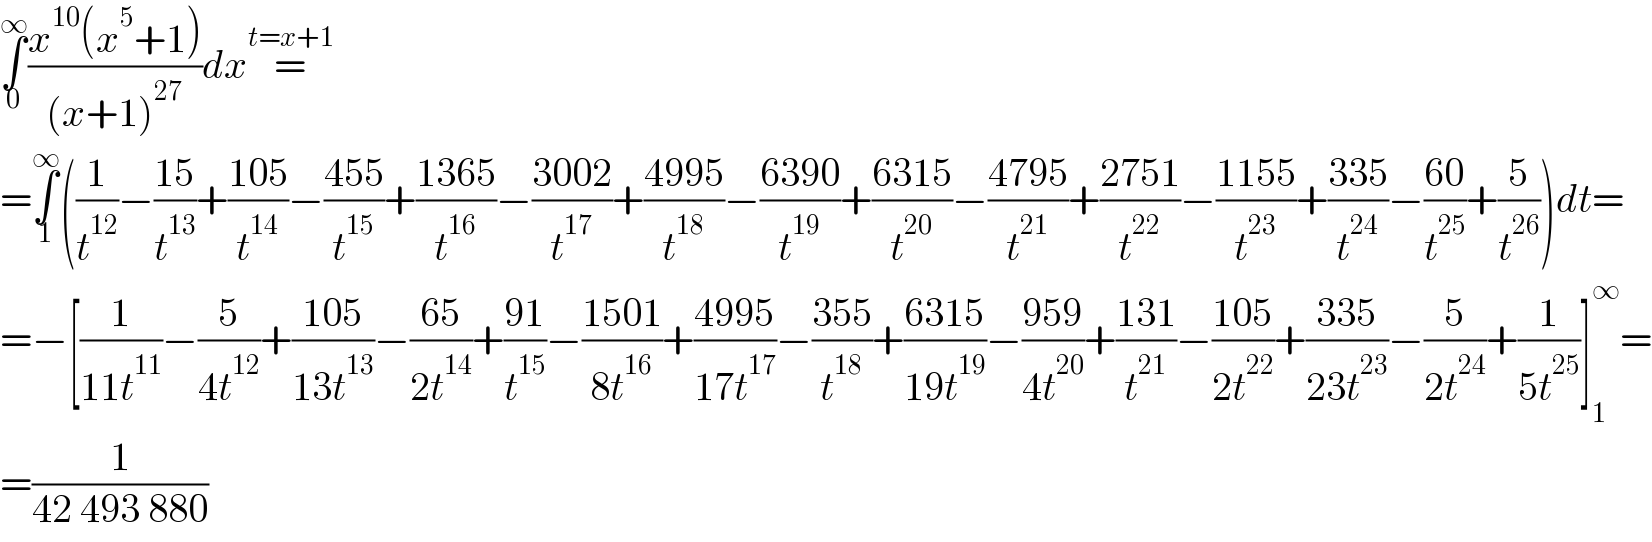 ∫_0 ^∞ ((x^(10) (x^5 +1))/((x+1)^(27) ))dx=^(t=x+1)   =∫_1 ^∞ ((1/t^(12) )−((15)/t^(13) )+((105)/t^(14) )−((455)/t^(15) )+((1365)/t^(16) )−((3002)/t^(17) )+((4995)/t^(18) )−((6390)/t^(19) )+((6315)/t^(20) )−((4795)/t^(21) )+((2751)/t^(22) )−((1155)/t^(23) )+((335)/t^(24) )−((60)/t^(25) )+(5/t^(26) ))dt=  =−[(1/(11t^(11) ))−(5/(4t^(12) ))+((105)/(13t^(13) ))−((65)/(2t^(14) ))+((91)/t^(15) )−((1501)/(8t^(16) ))+((4995)/(17t^(17) ))−((355)/t^(18) )+((6315)/(19t^(19) ))−((959)/(4t^(20) ))+((131)/t^(21) )−((105)/(2t^(22) ))+((335)/(23t^(23) ))−(5/(2t^(24) ))+(1/(5t^(25) ))]_1 ^∞ =  =(1/(42 493 880))  